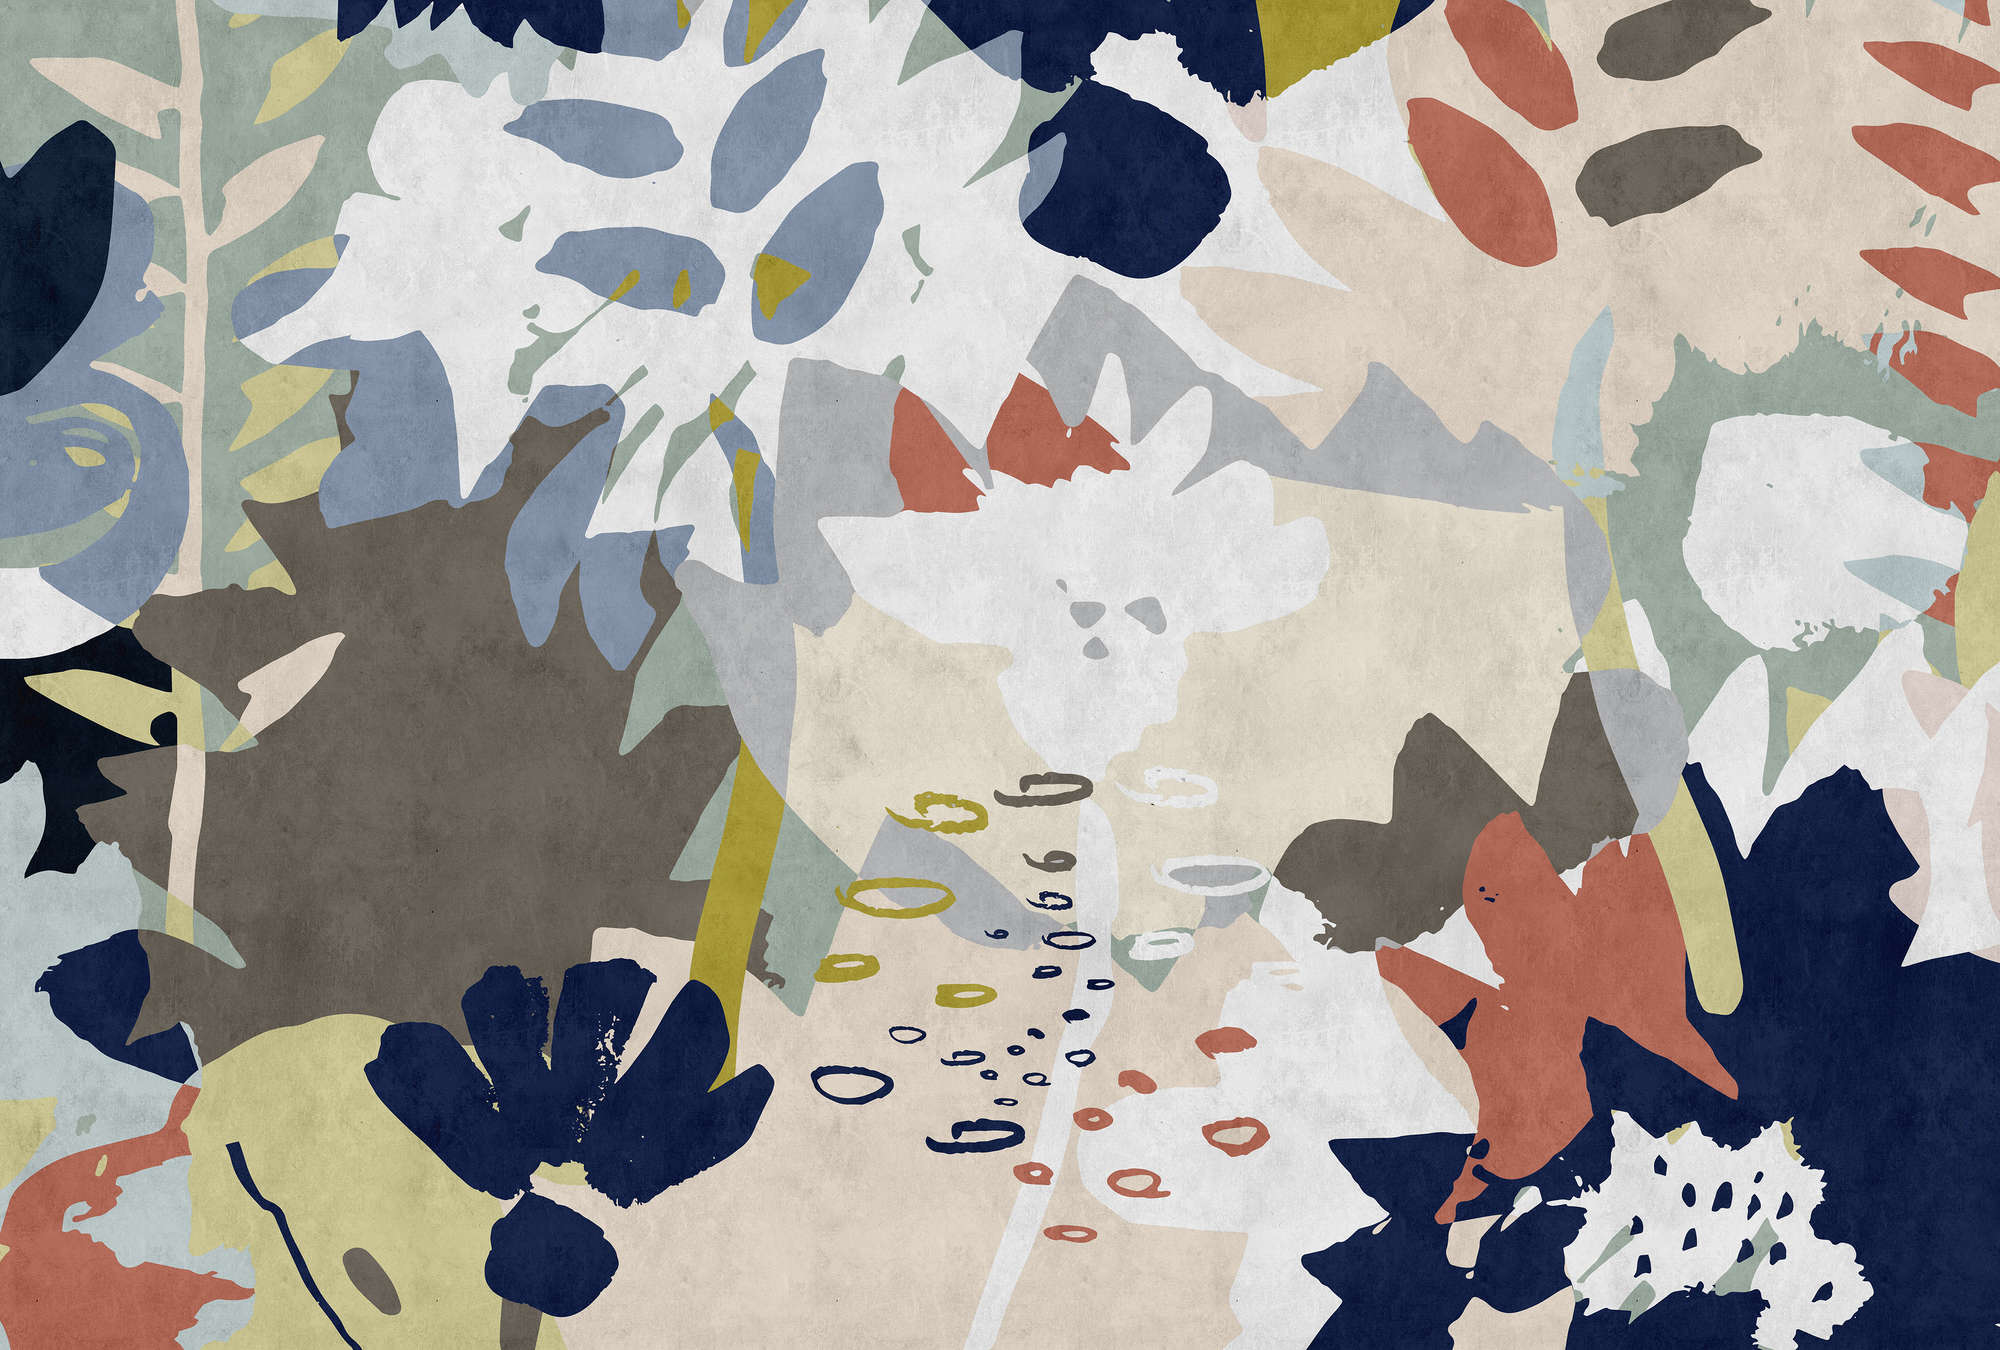             Collage Floral 4 - Papel pintado con motivo de hojas de colores - Estructura de papel secante - Azul, Marrón | Vellón liso mate
        